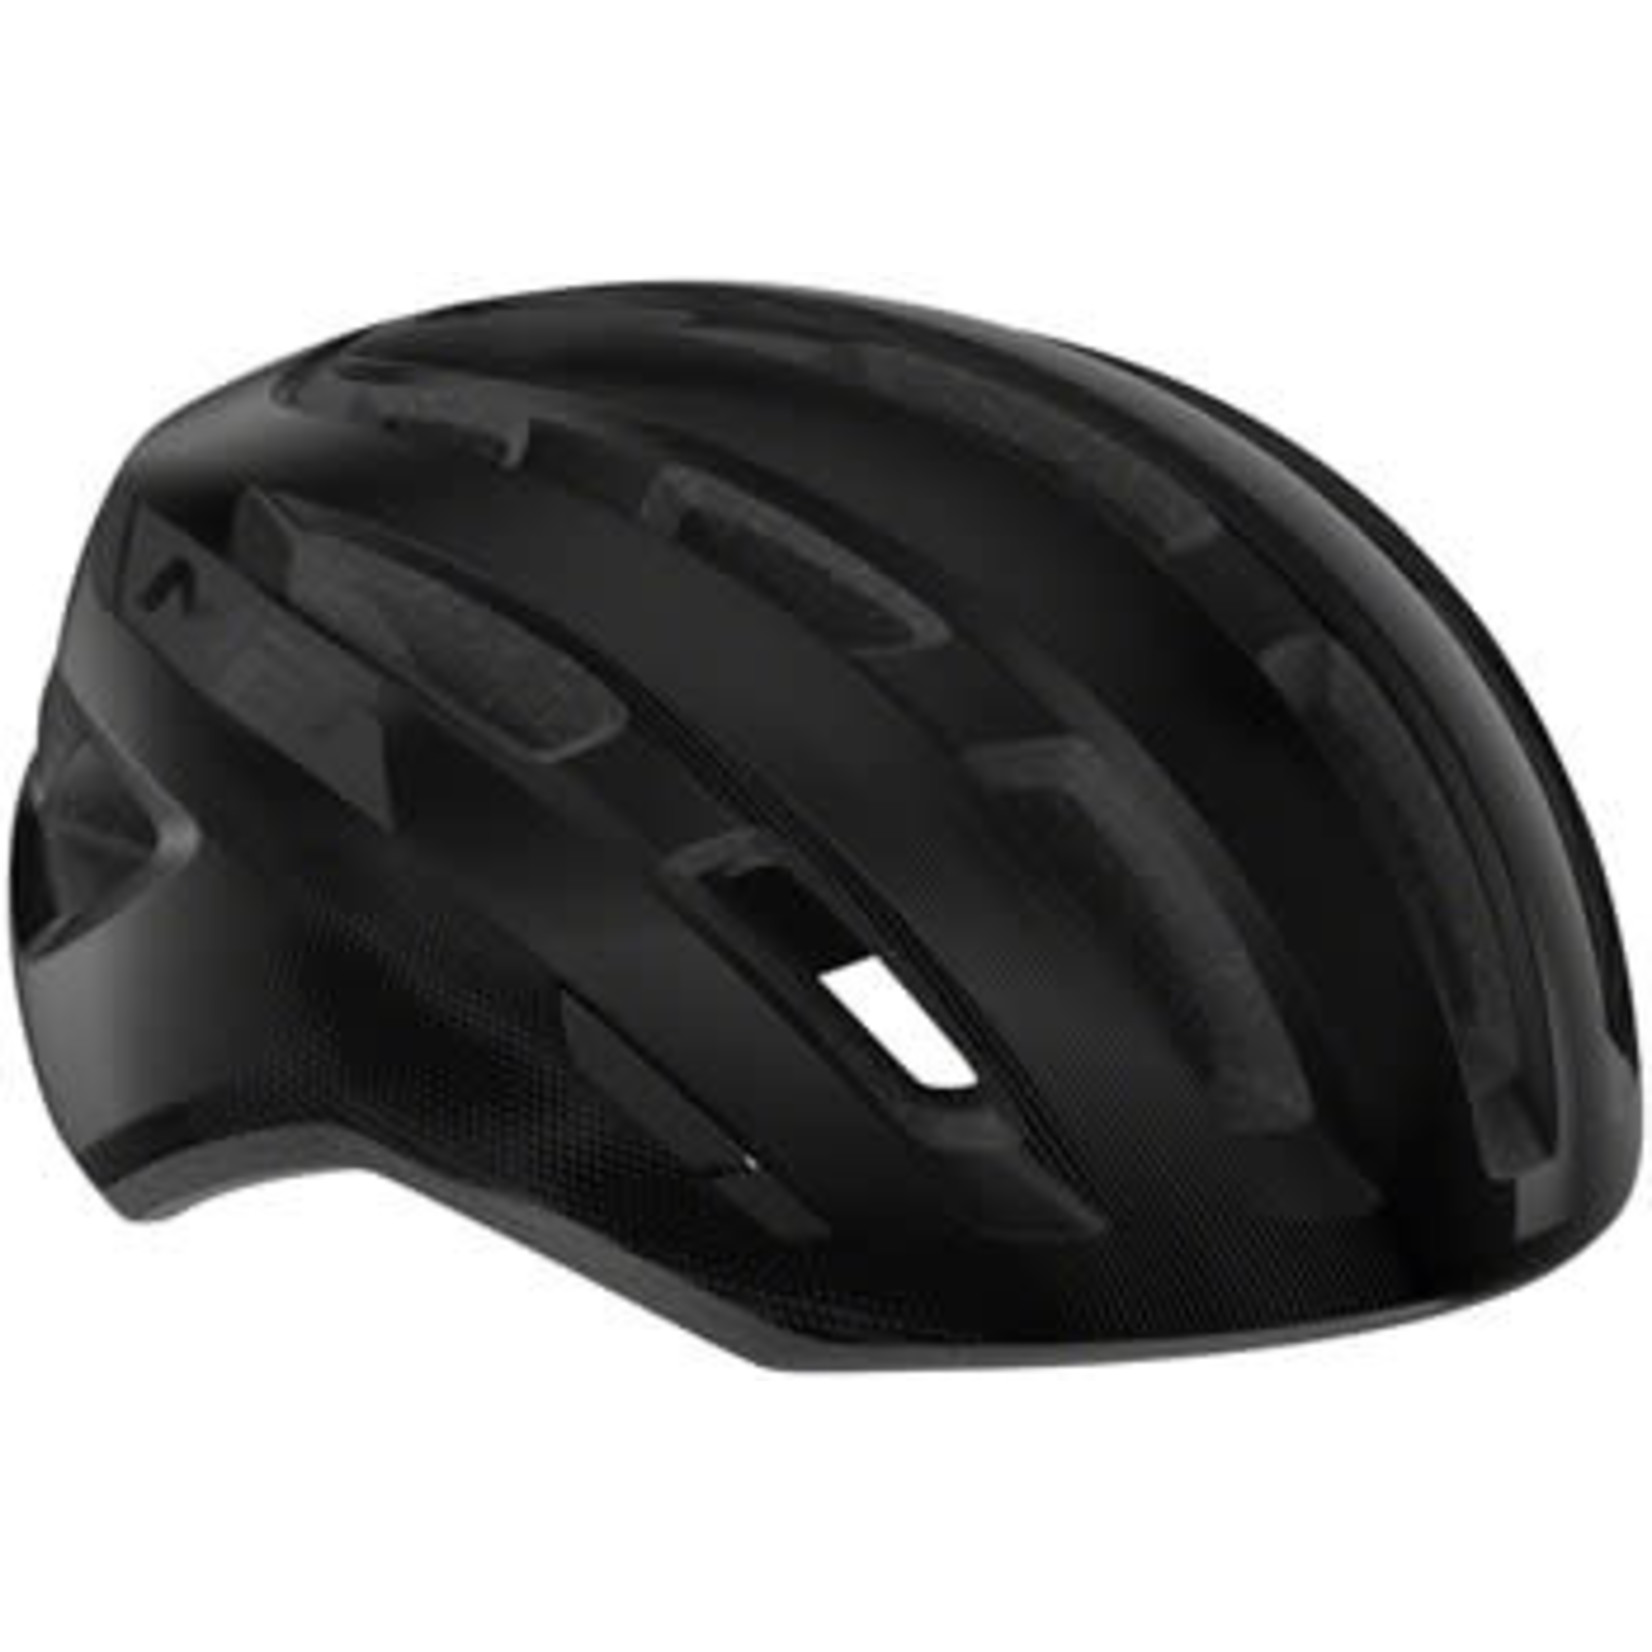 MET Helmets MET Miles MIPS Helmet - Black Glossy Small/Medium